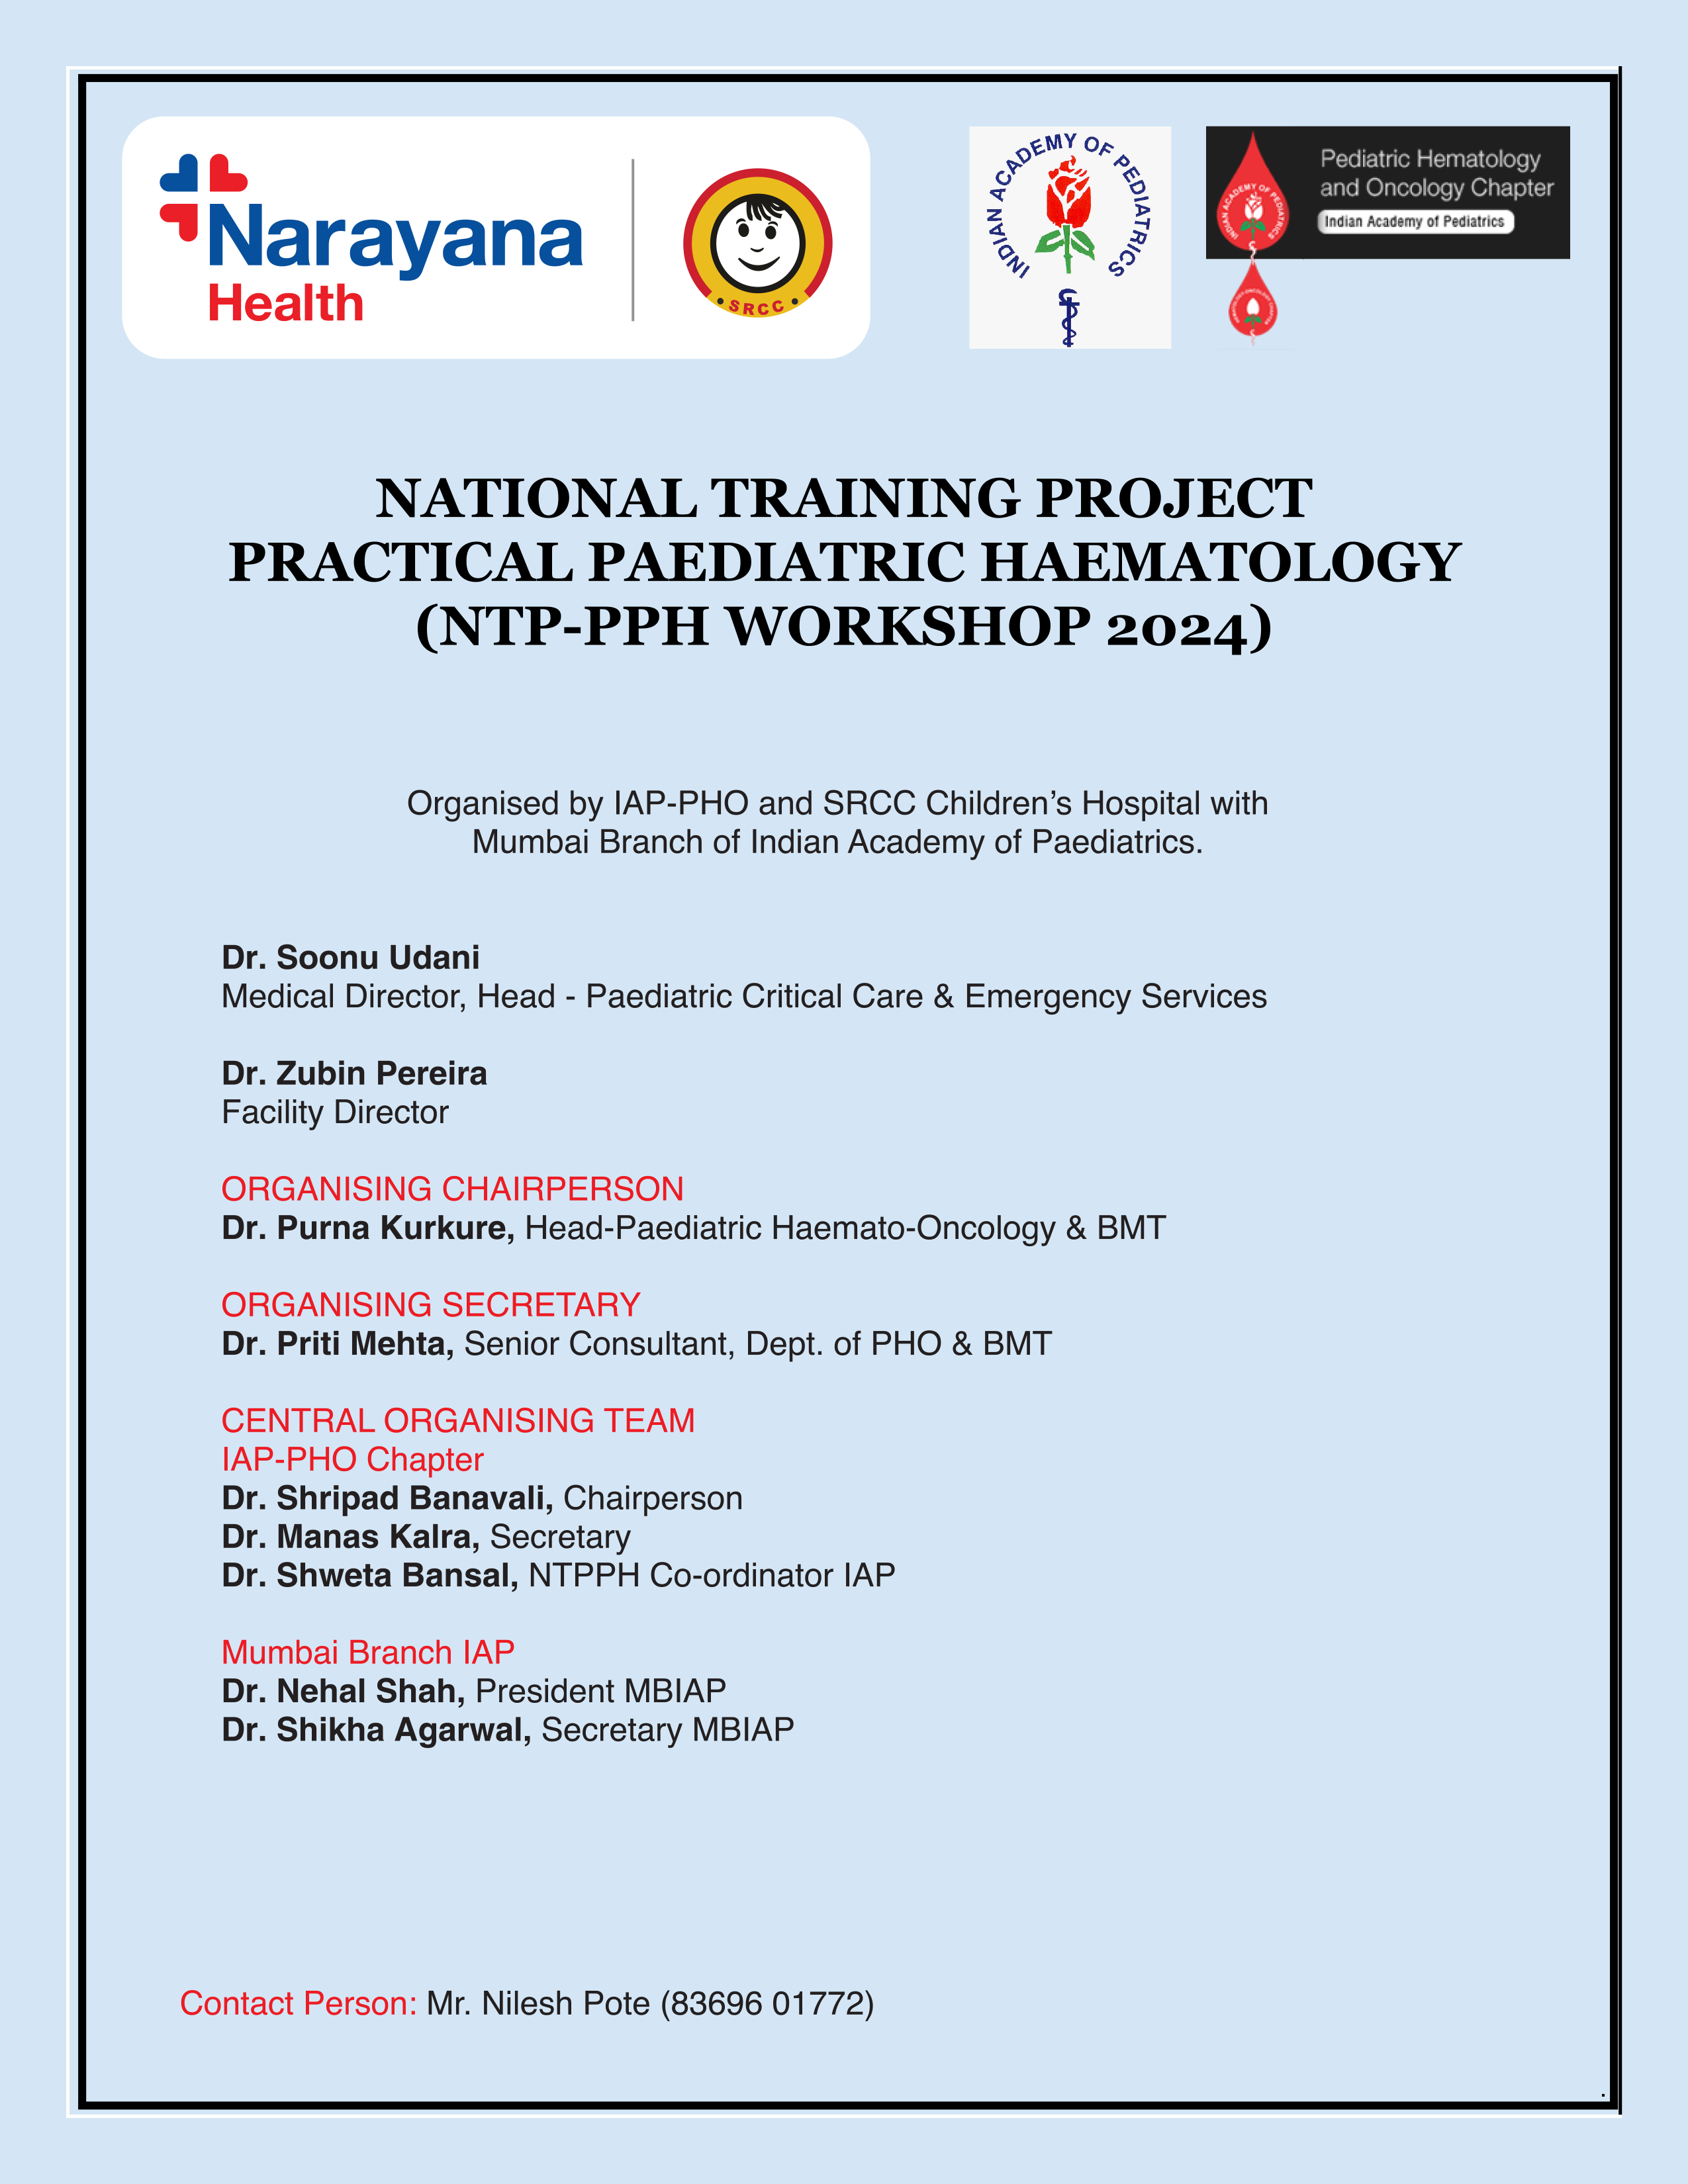 National Training of Practical Paediatric Hematology workshop